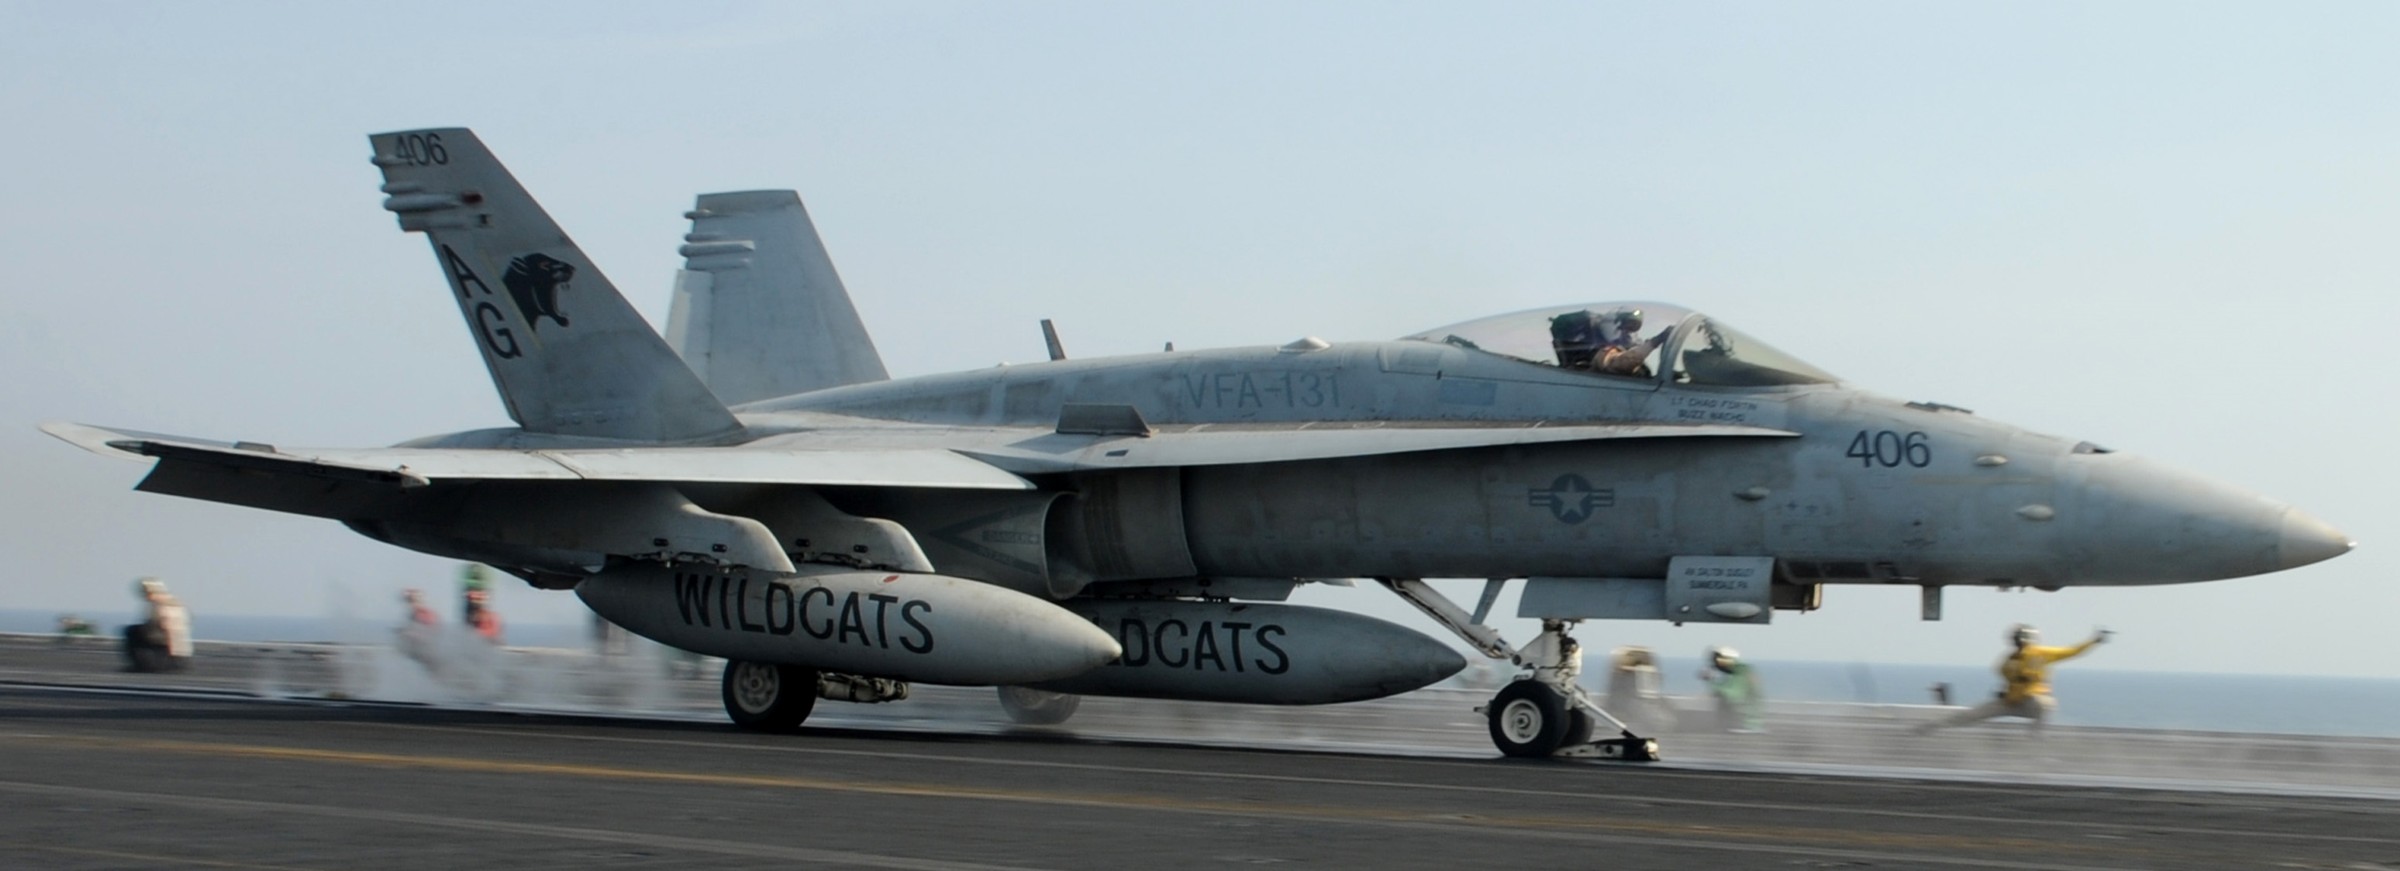 vfa-131 wildcats strike fighter squadron f/a-18c hornet cvw-7 uss dwight d. eisenhower cvn-69 2012 66